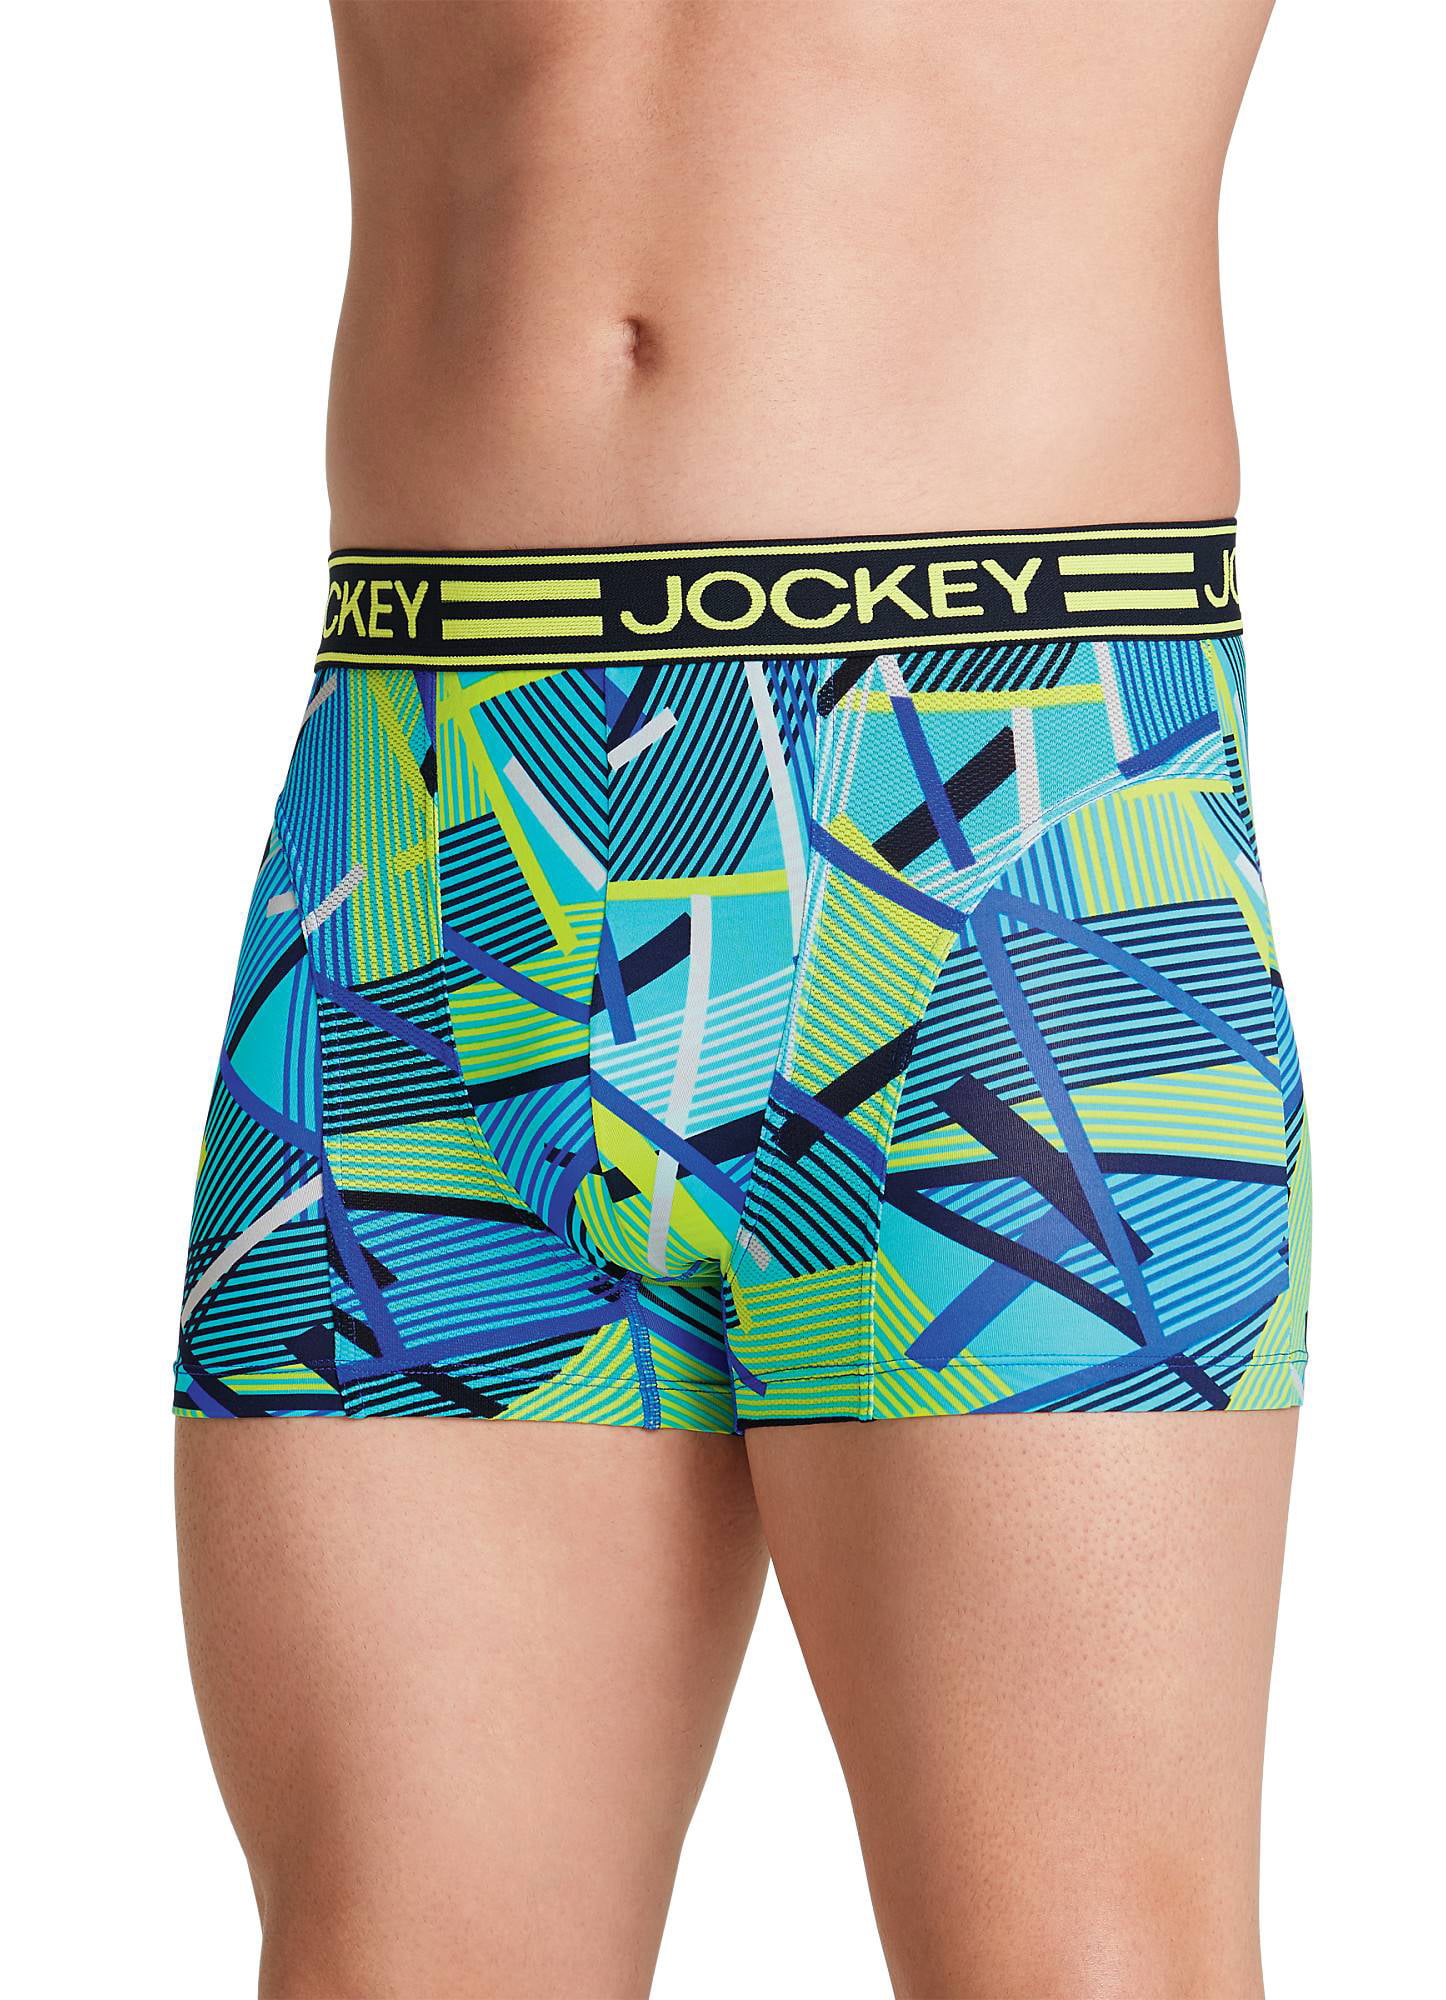 Jockey Mens Active Mesh Boxer Brief Underwear Boxer Briefs - Walmart.com